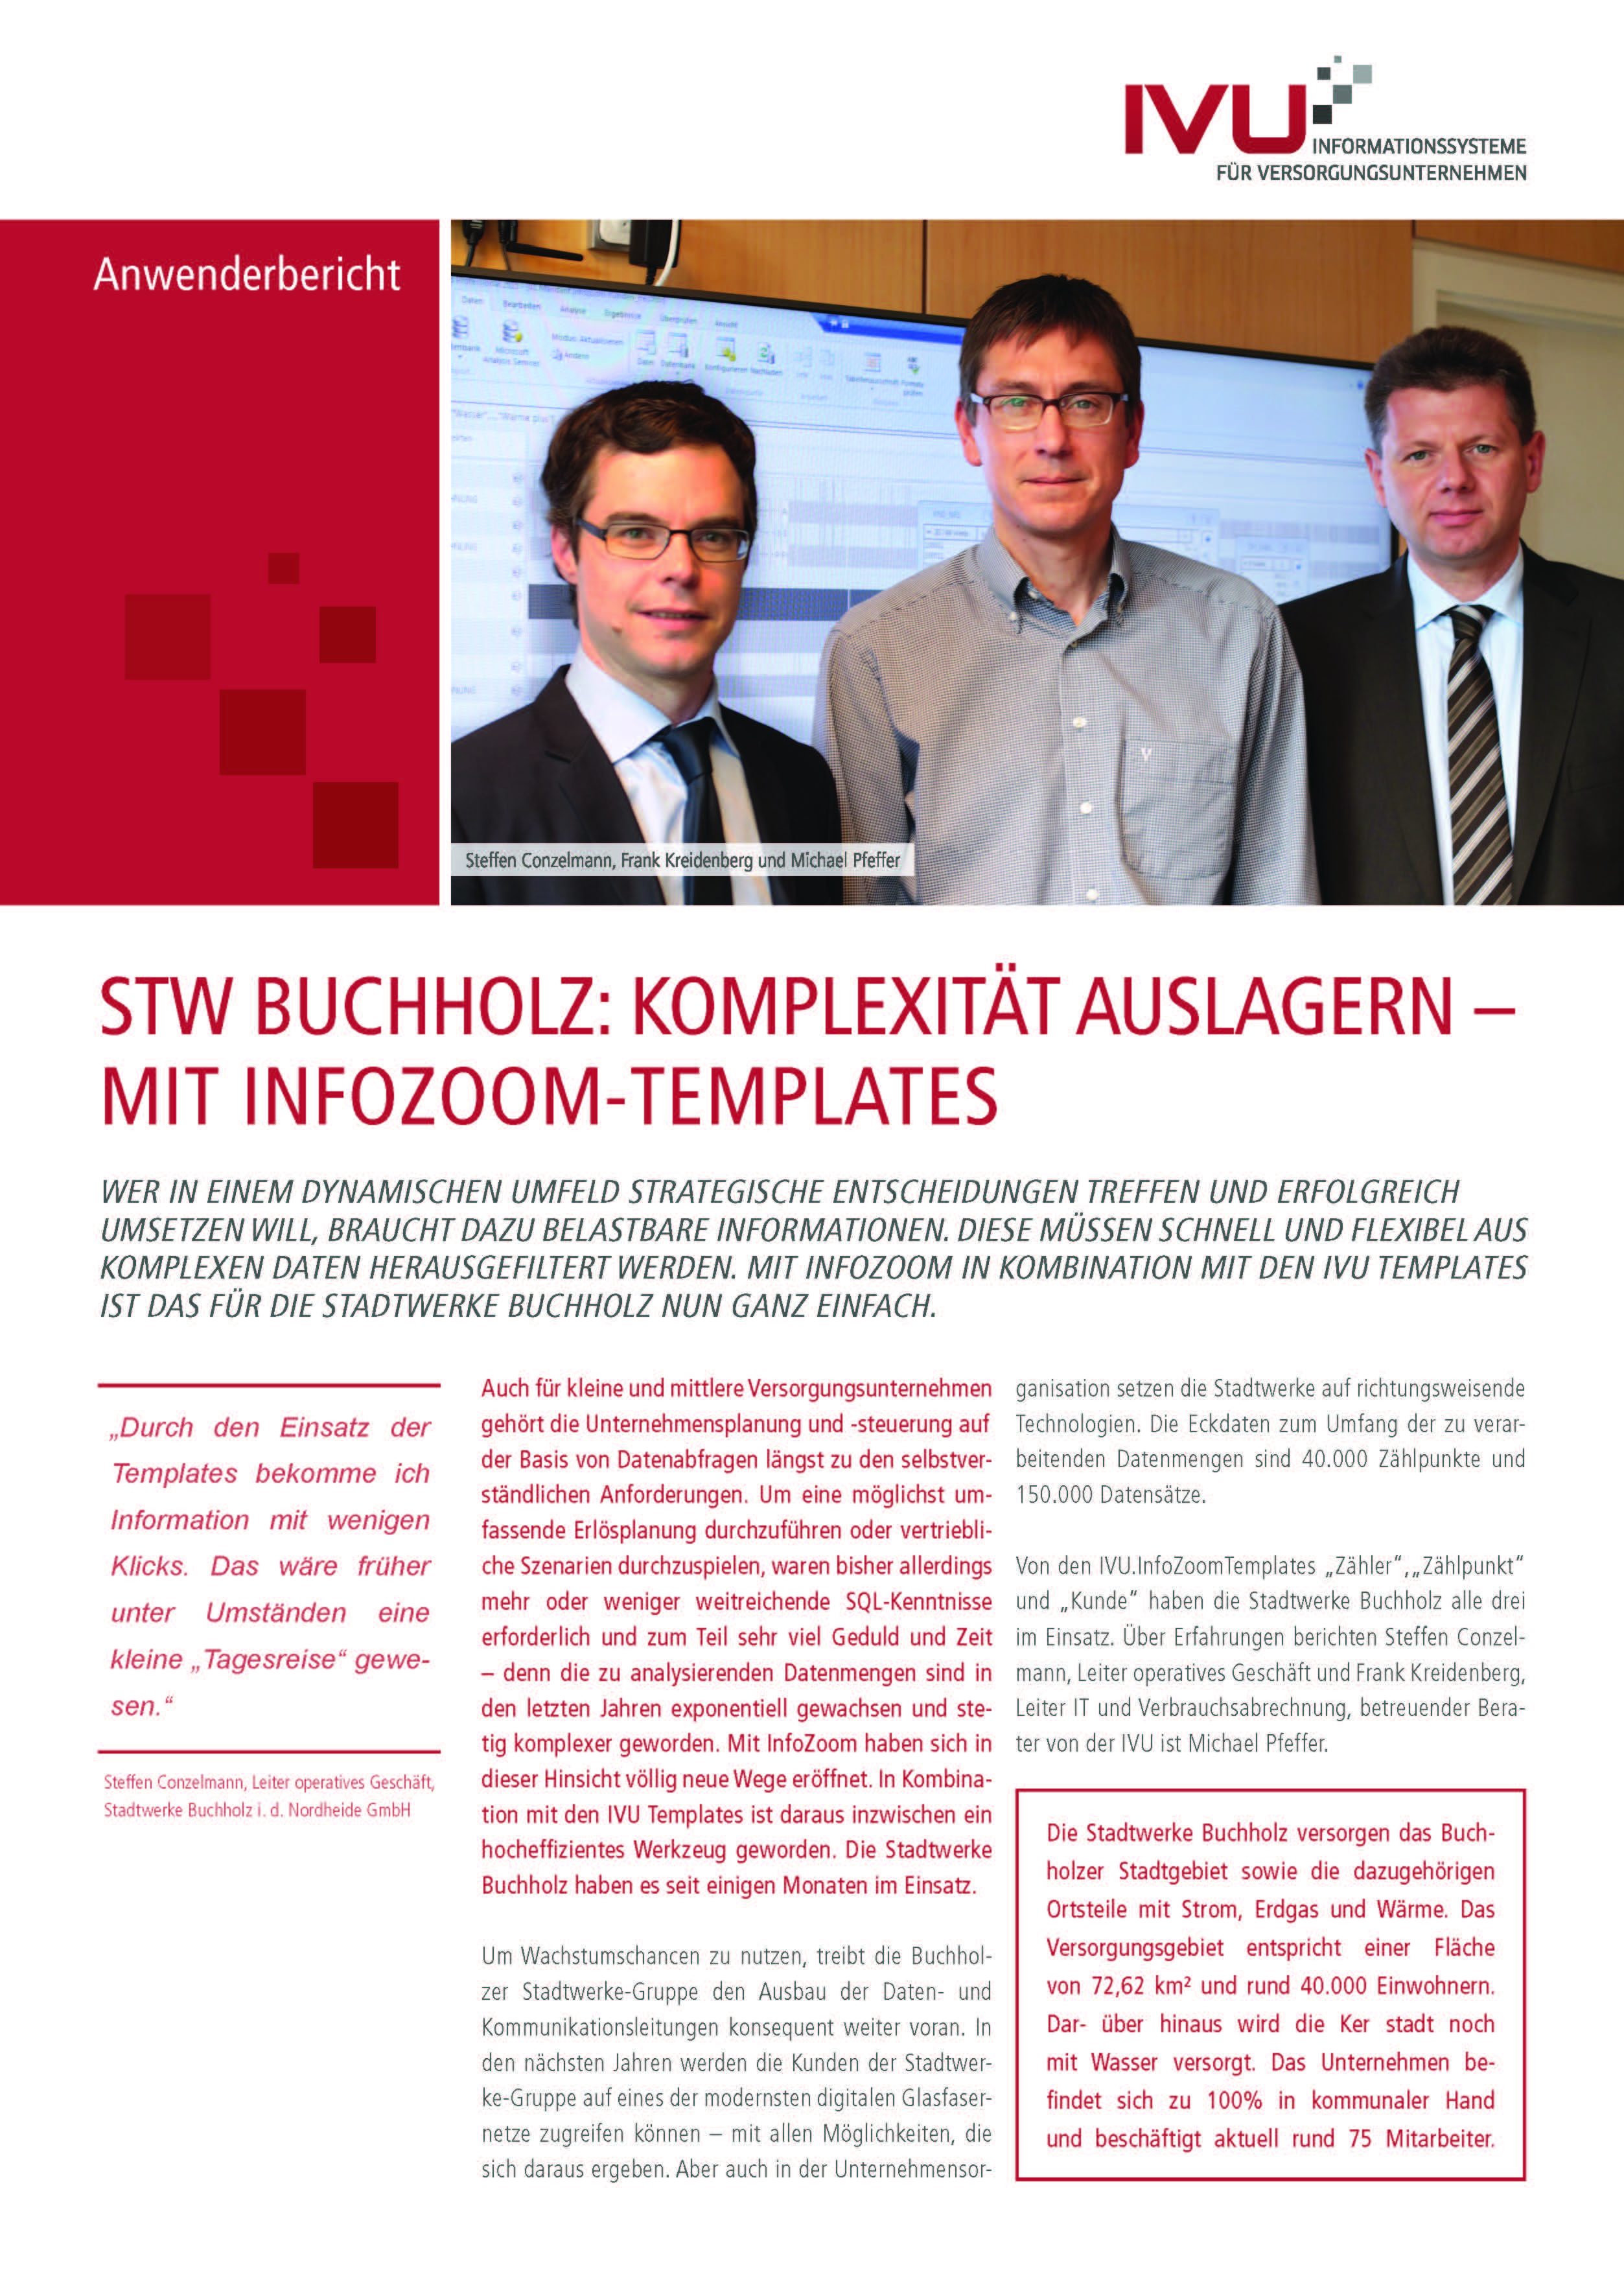 IVU.InfoZoom-Templates bei den Stadtwerken Buchholz